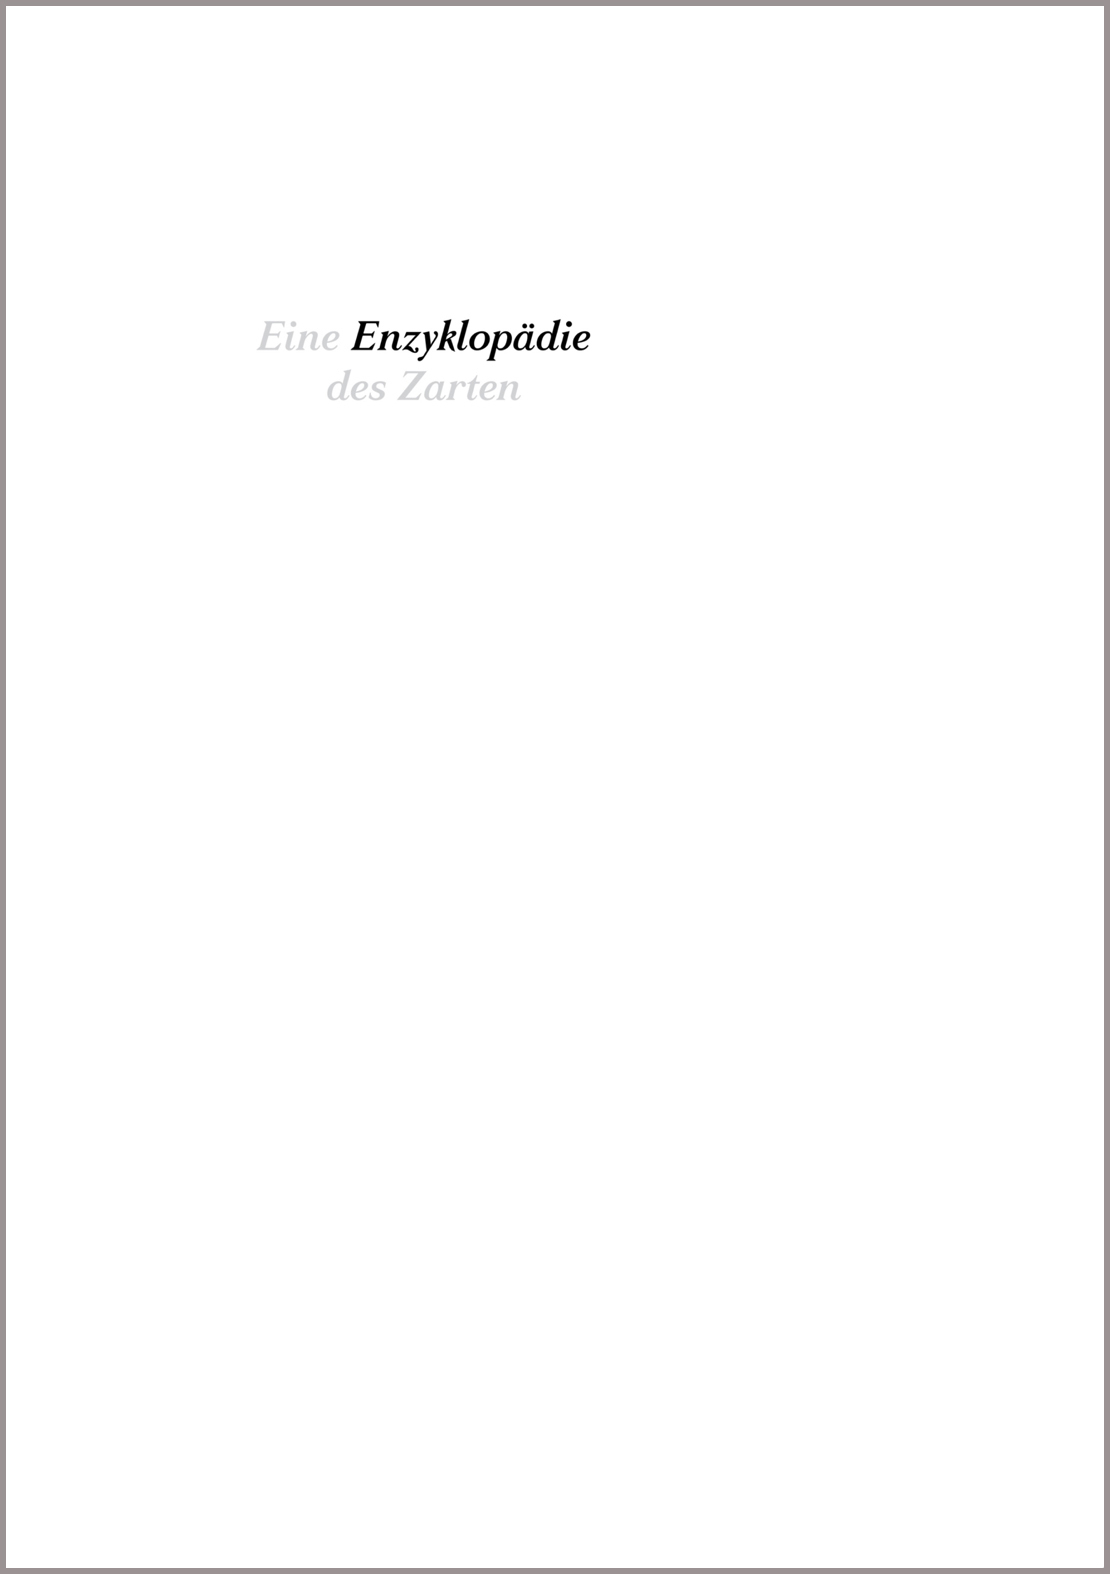 Enzyklopädie des Zarten, Buch, Anne Brannys, Brannys, Frankfurter Verlagsanstalt